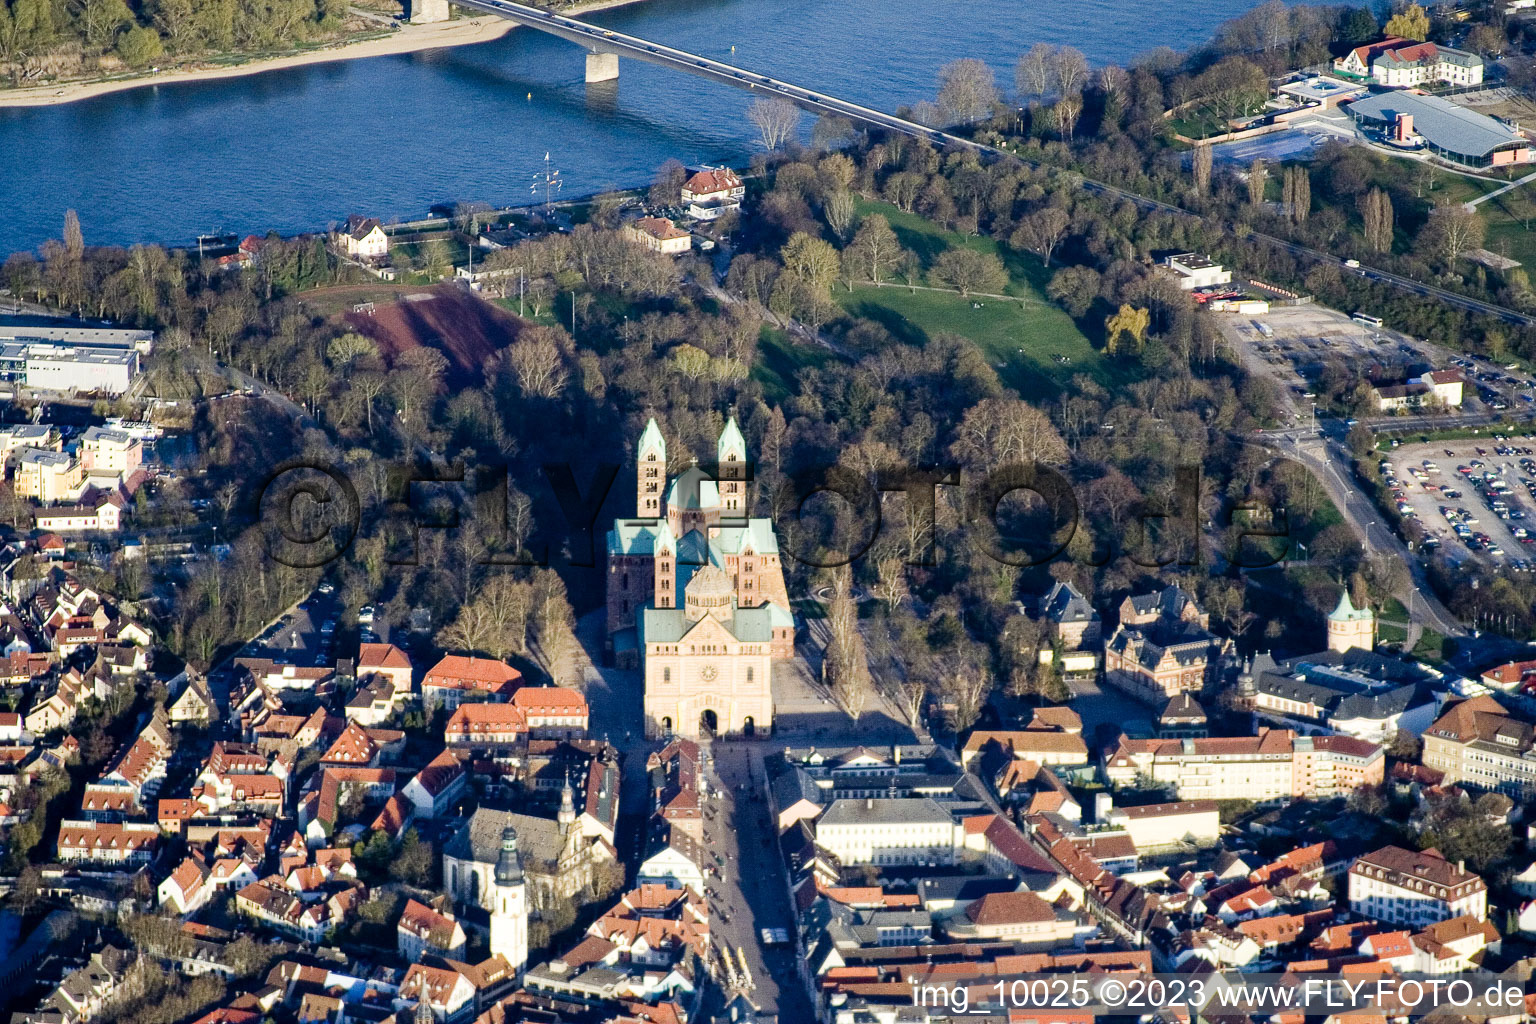 Cathédrale à Speyer dans le département Rhénanie-Palatinat, Allemagne vue d'en haut